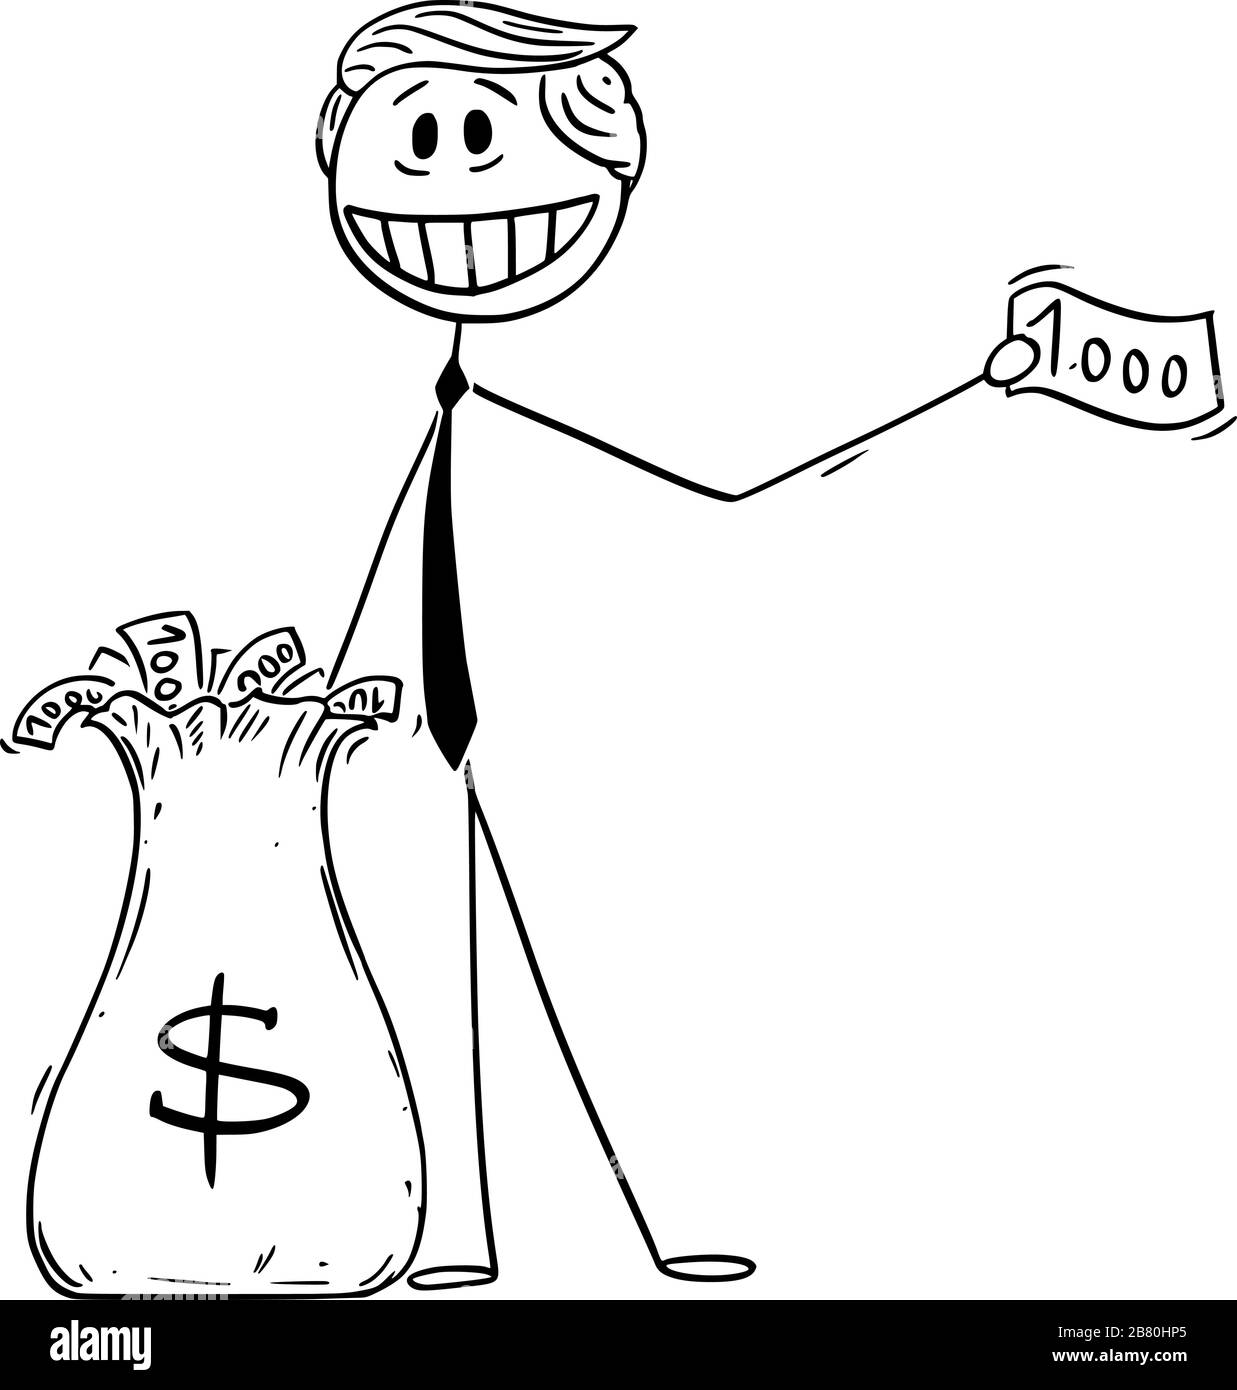 Illustration vectorielle du président américain Donald Trump donnant de l'argent en utilisant de l'argent hélicoptère ou un assouplissement quantitatif pendant la récession.19 mars 2020. Illustration de Vecteur